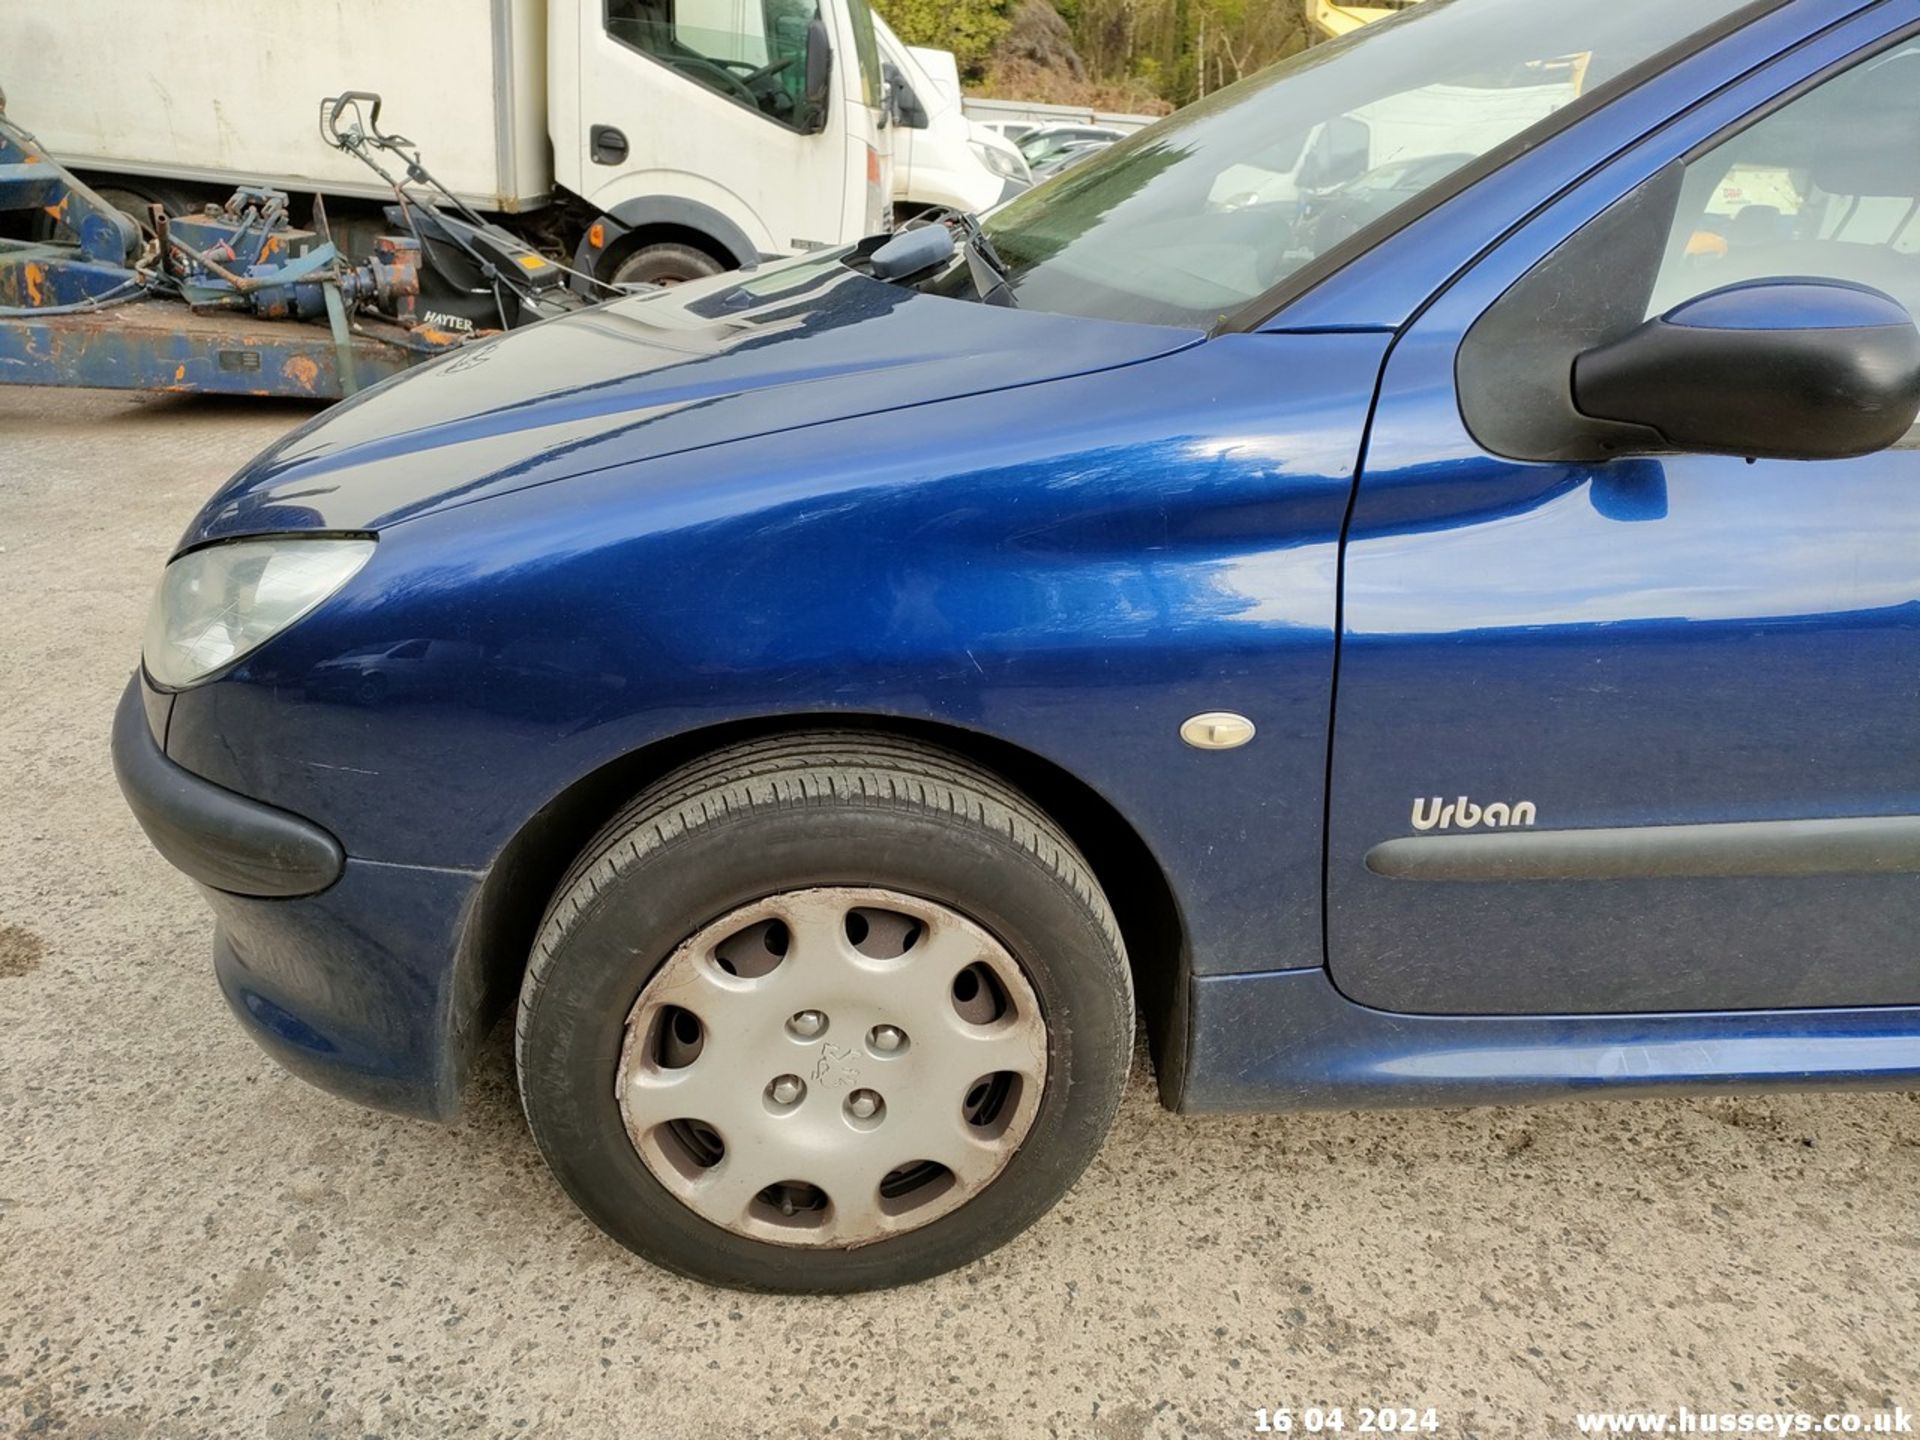 06/55 PEUGEOT 206 URBAN HDI - 1398cc 5dr Hatchback (Blue, 165k) - Image 24 of 63